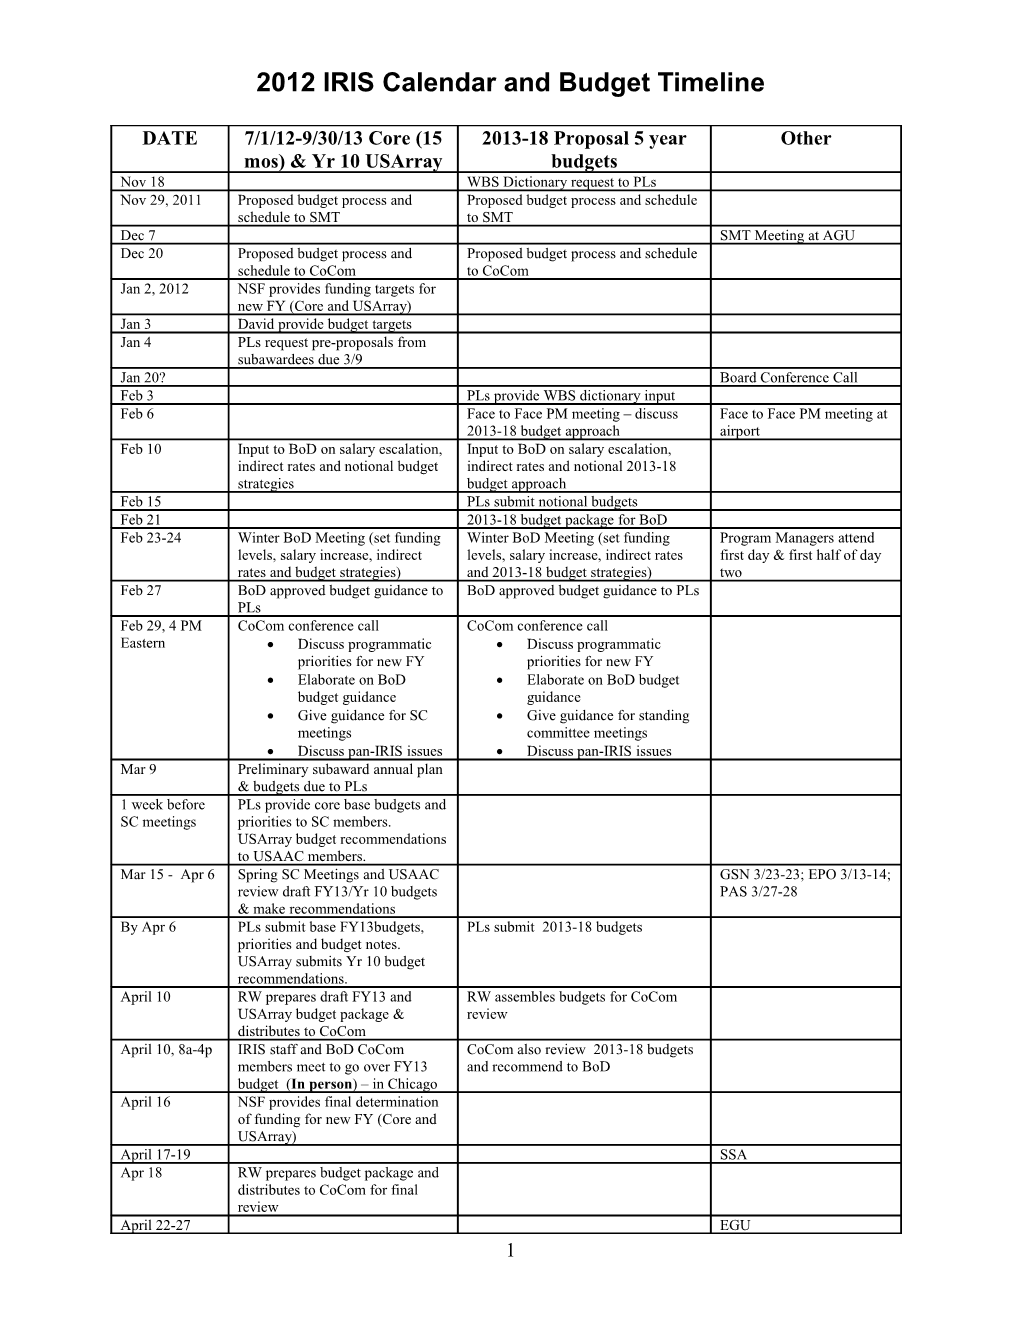 2008 Cocom Calendar and Core Budget Timeline